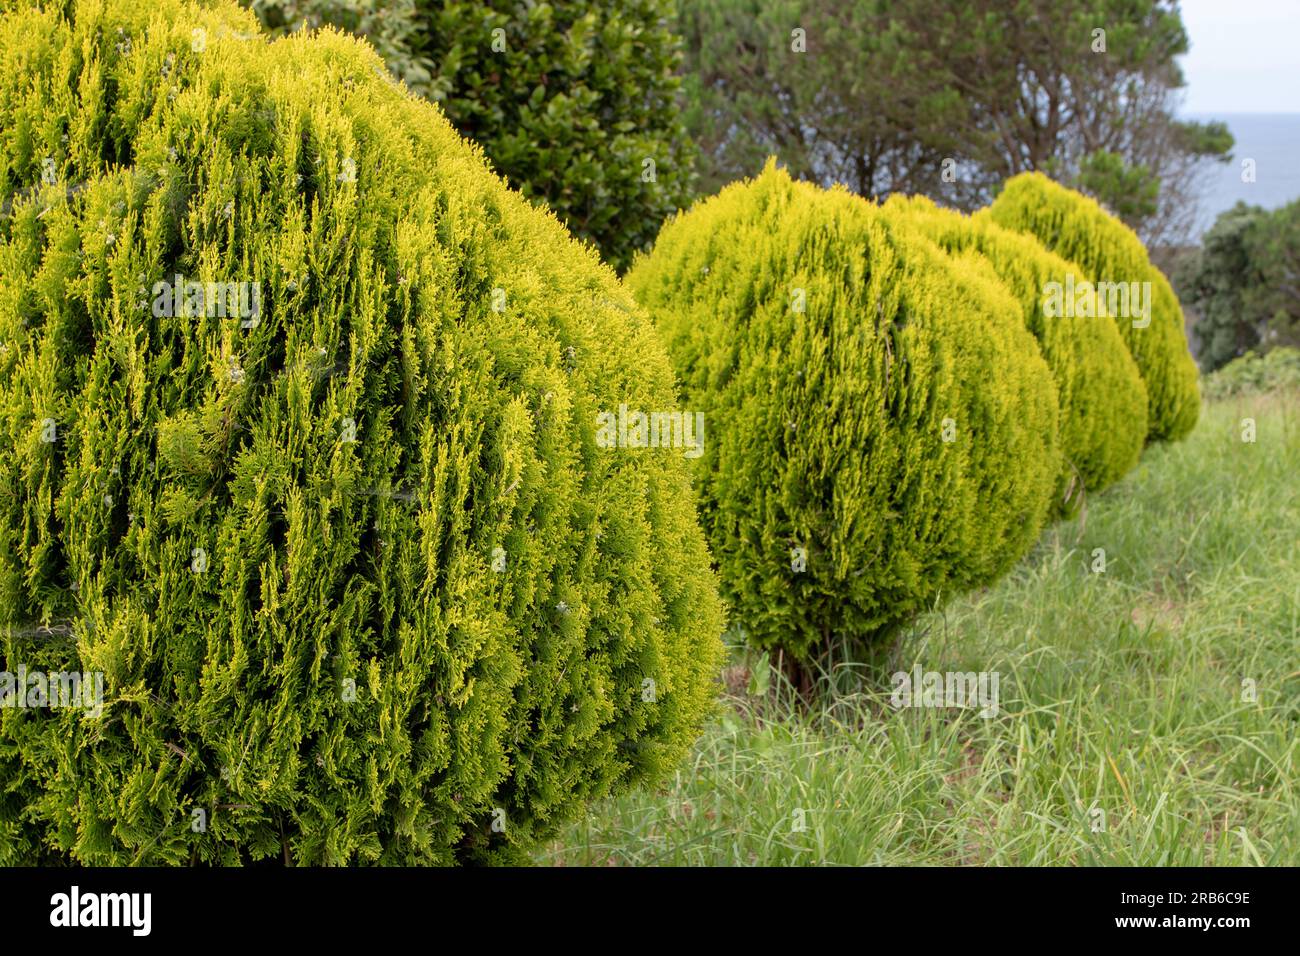 Platycladus orientalis ou thuja orientalis Aurea Nana. Nain Golden Oriental Thuja plantes dans une rangée. Banque D'Images